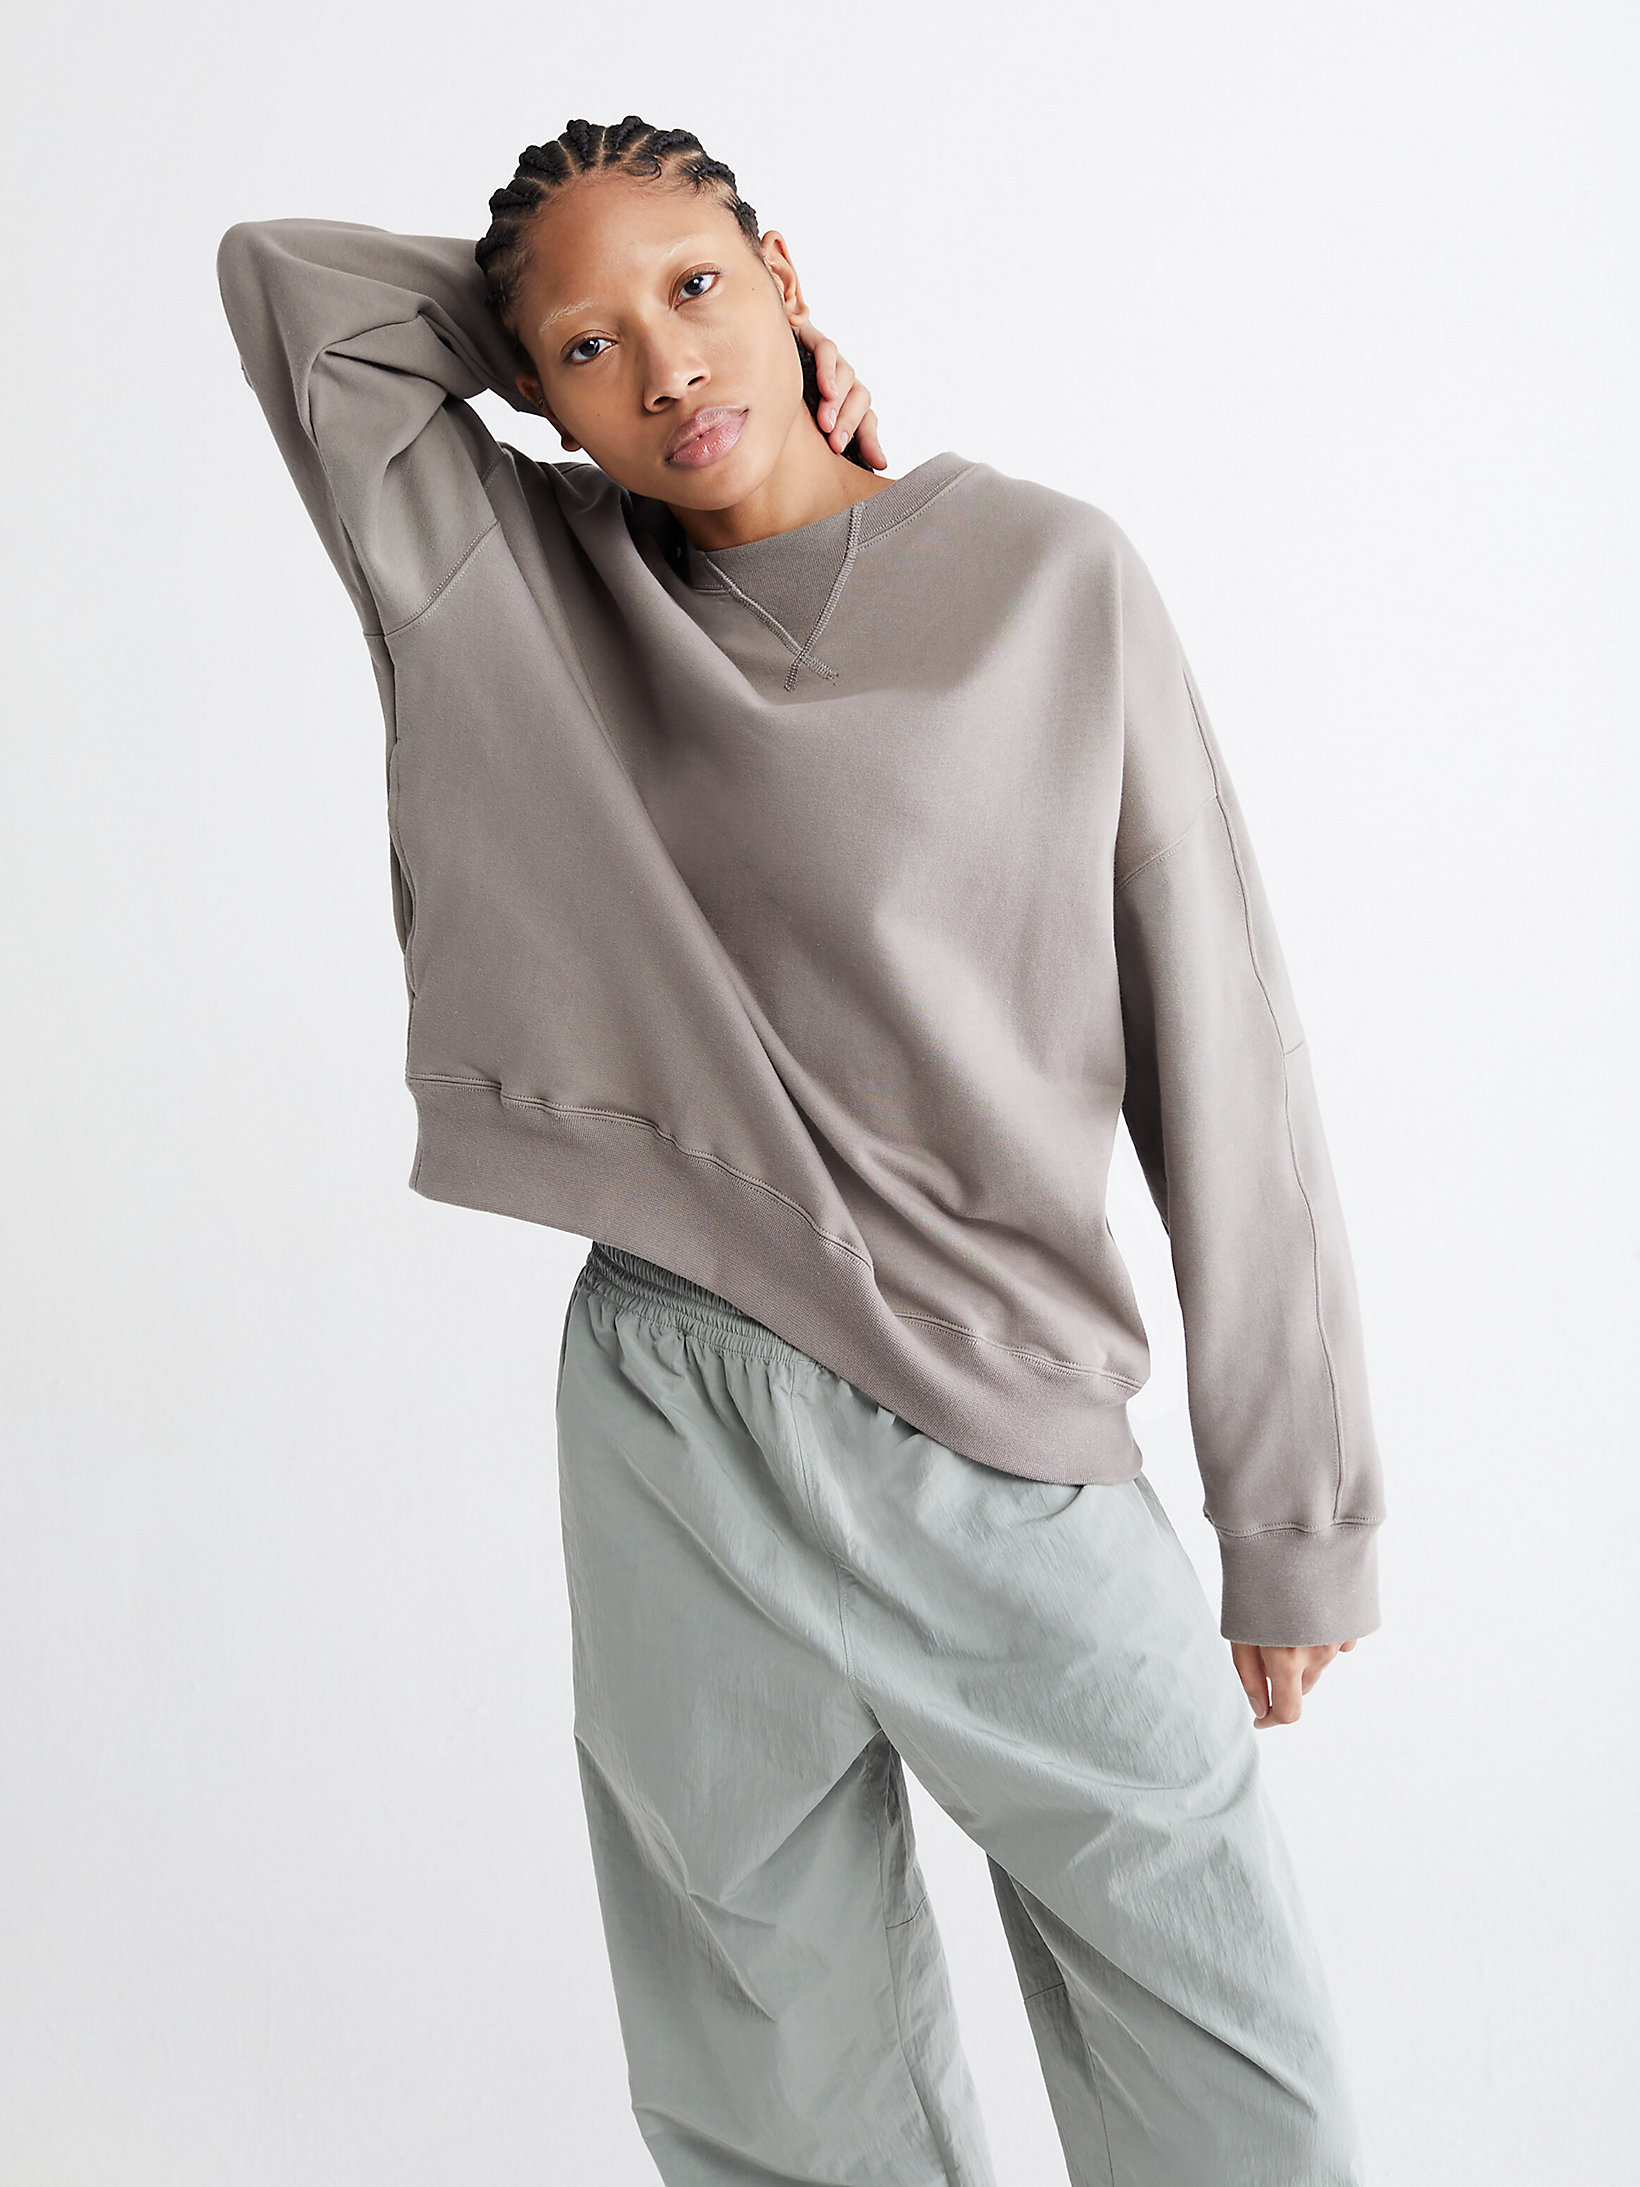 Warm Concrete Unisex Relaxed Sweatshirt - CK Standards undefined unisex Calvin Klein